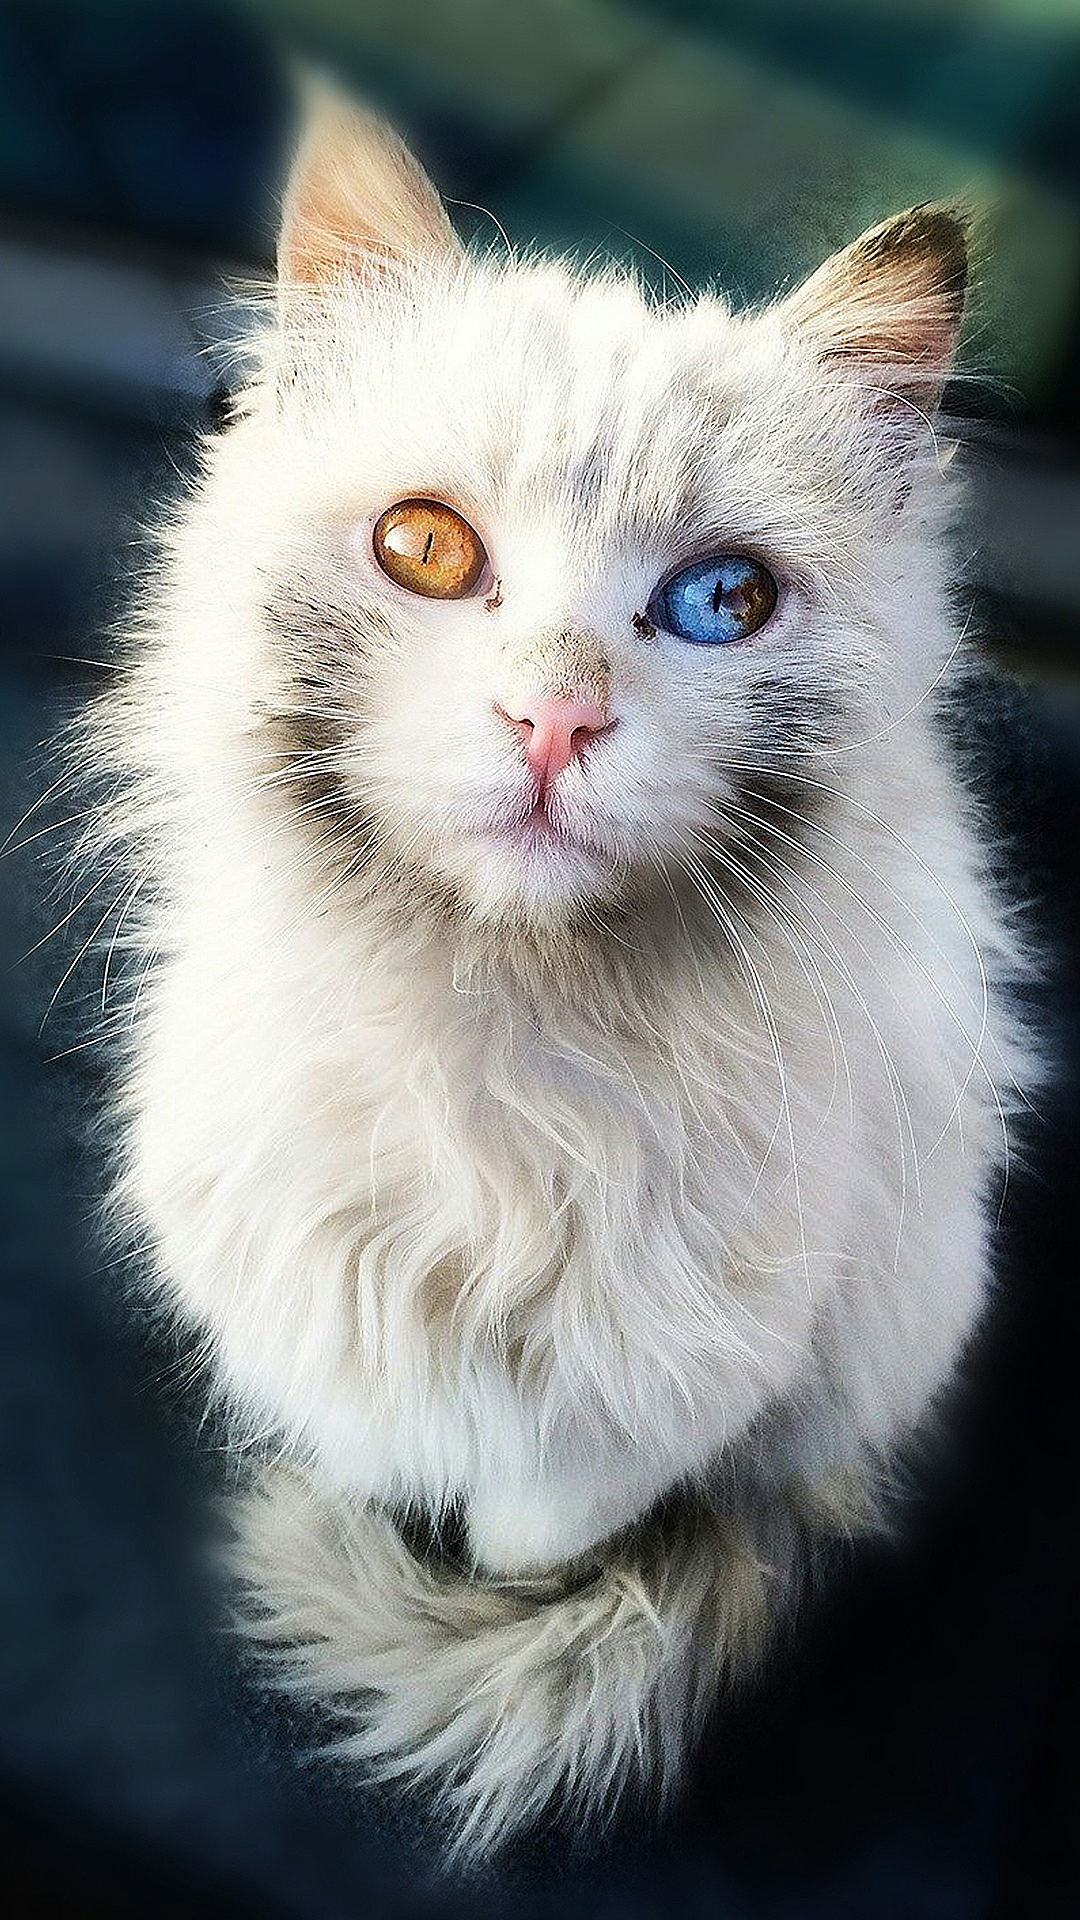 最漂亮的猫_世界上最漂亮的猫 图片 蛋蛋赞